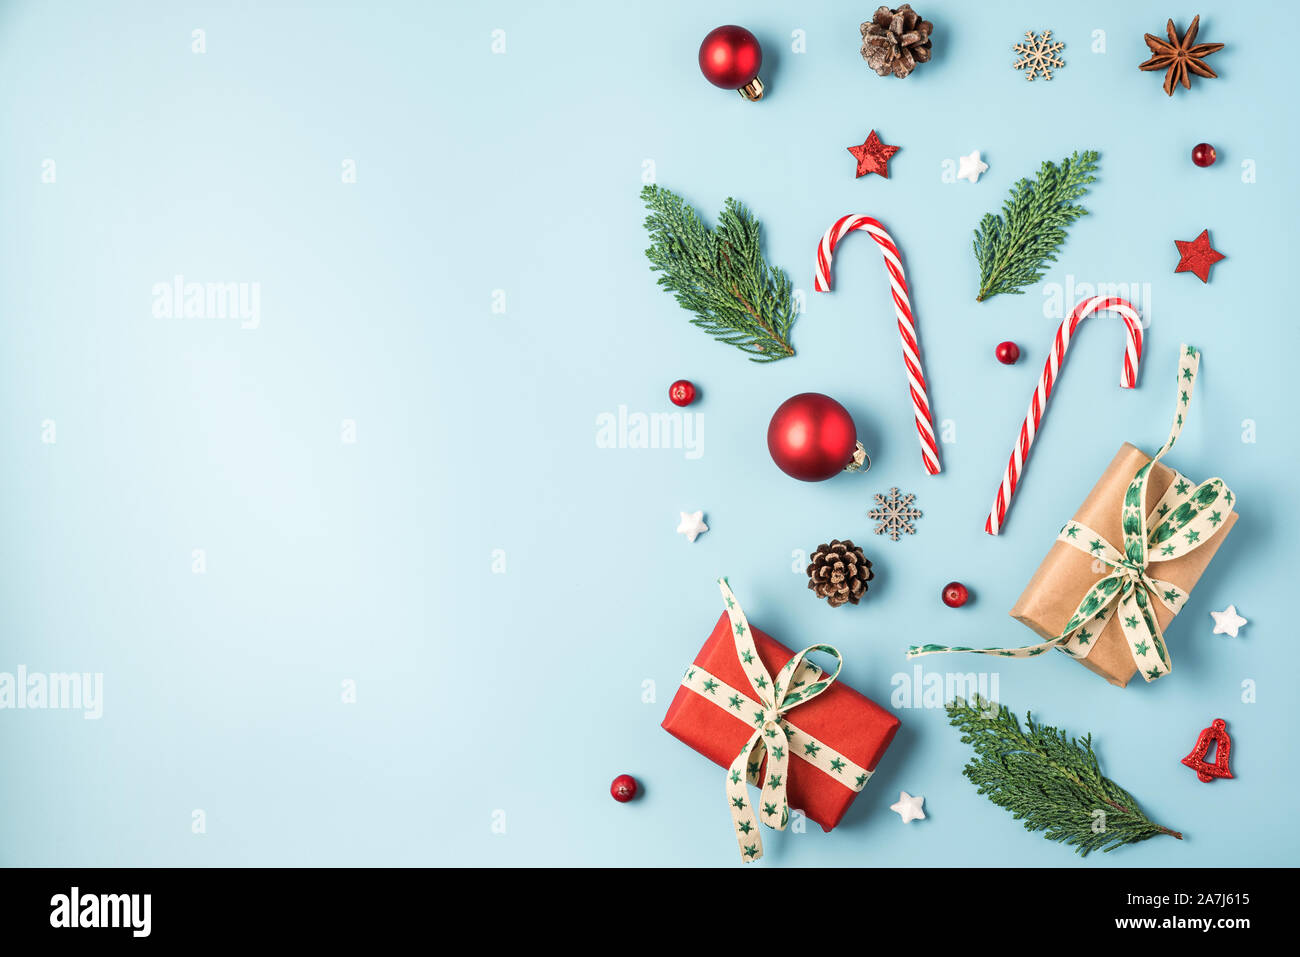 Noël arrière-plan. Des branches de sapins, des boîtes-cadeaux, décorations rouges, des bonbons, des pommes de pin sur fond bleu. L'hiver, Noël, nouvel an concept. Télévision Banque D'Images